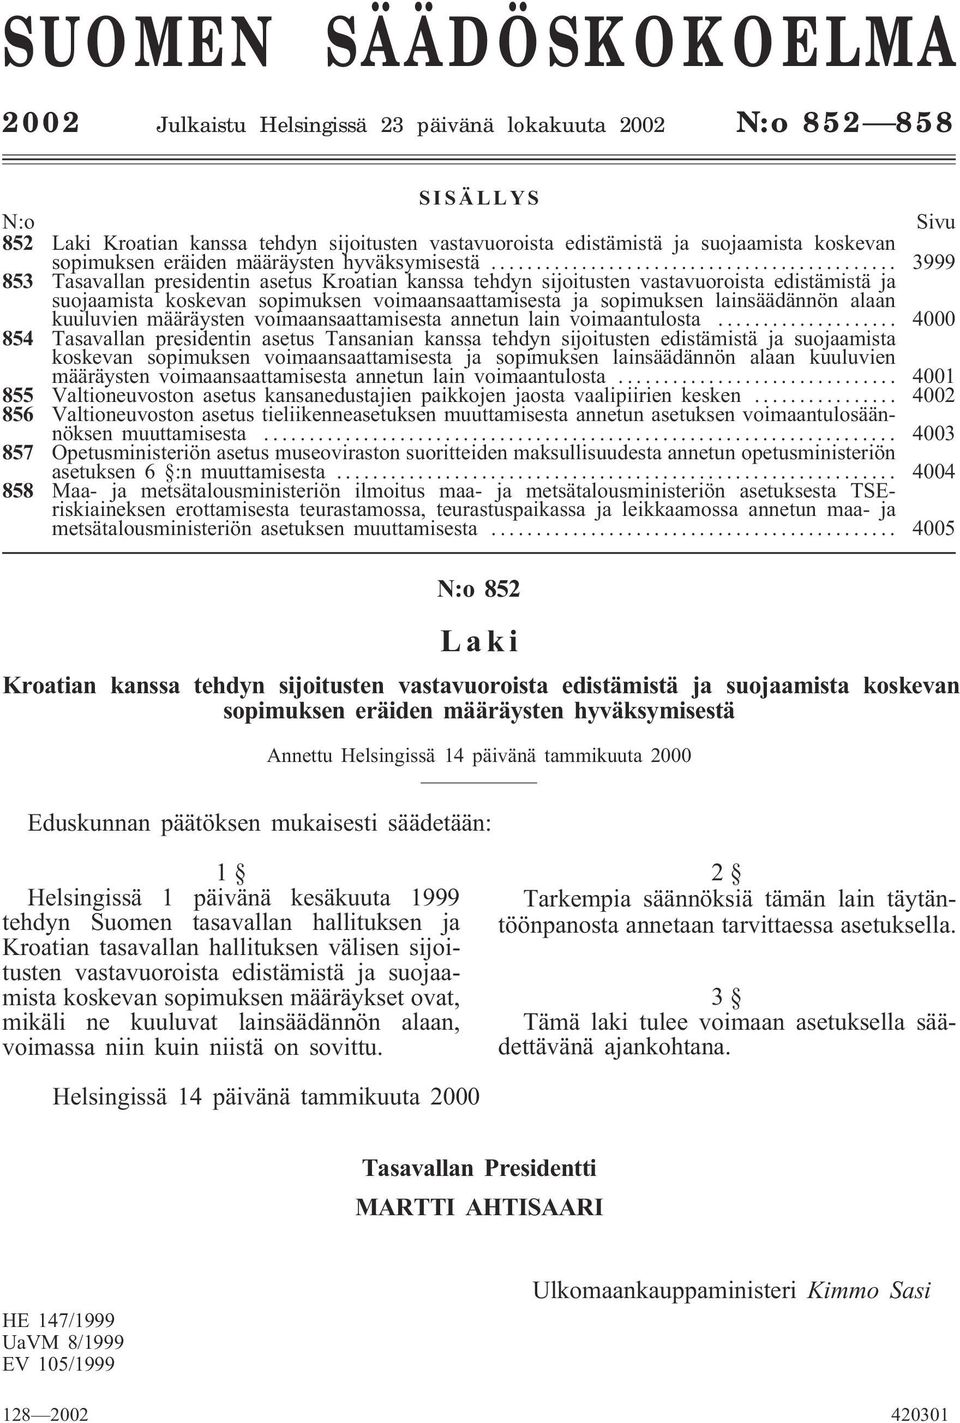 .. 3999 853 Tasavallan presidentin asetus Kroatian kanssa tehdyn sijoitusten vastavuoroista edistämistä ja suojaamista koskevan sopimuksen voimaansaattamisesta ja sopimuksen lainsäädännön alaan